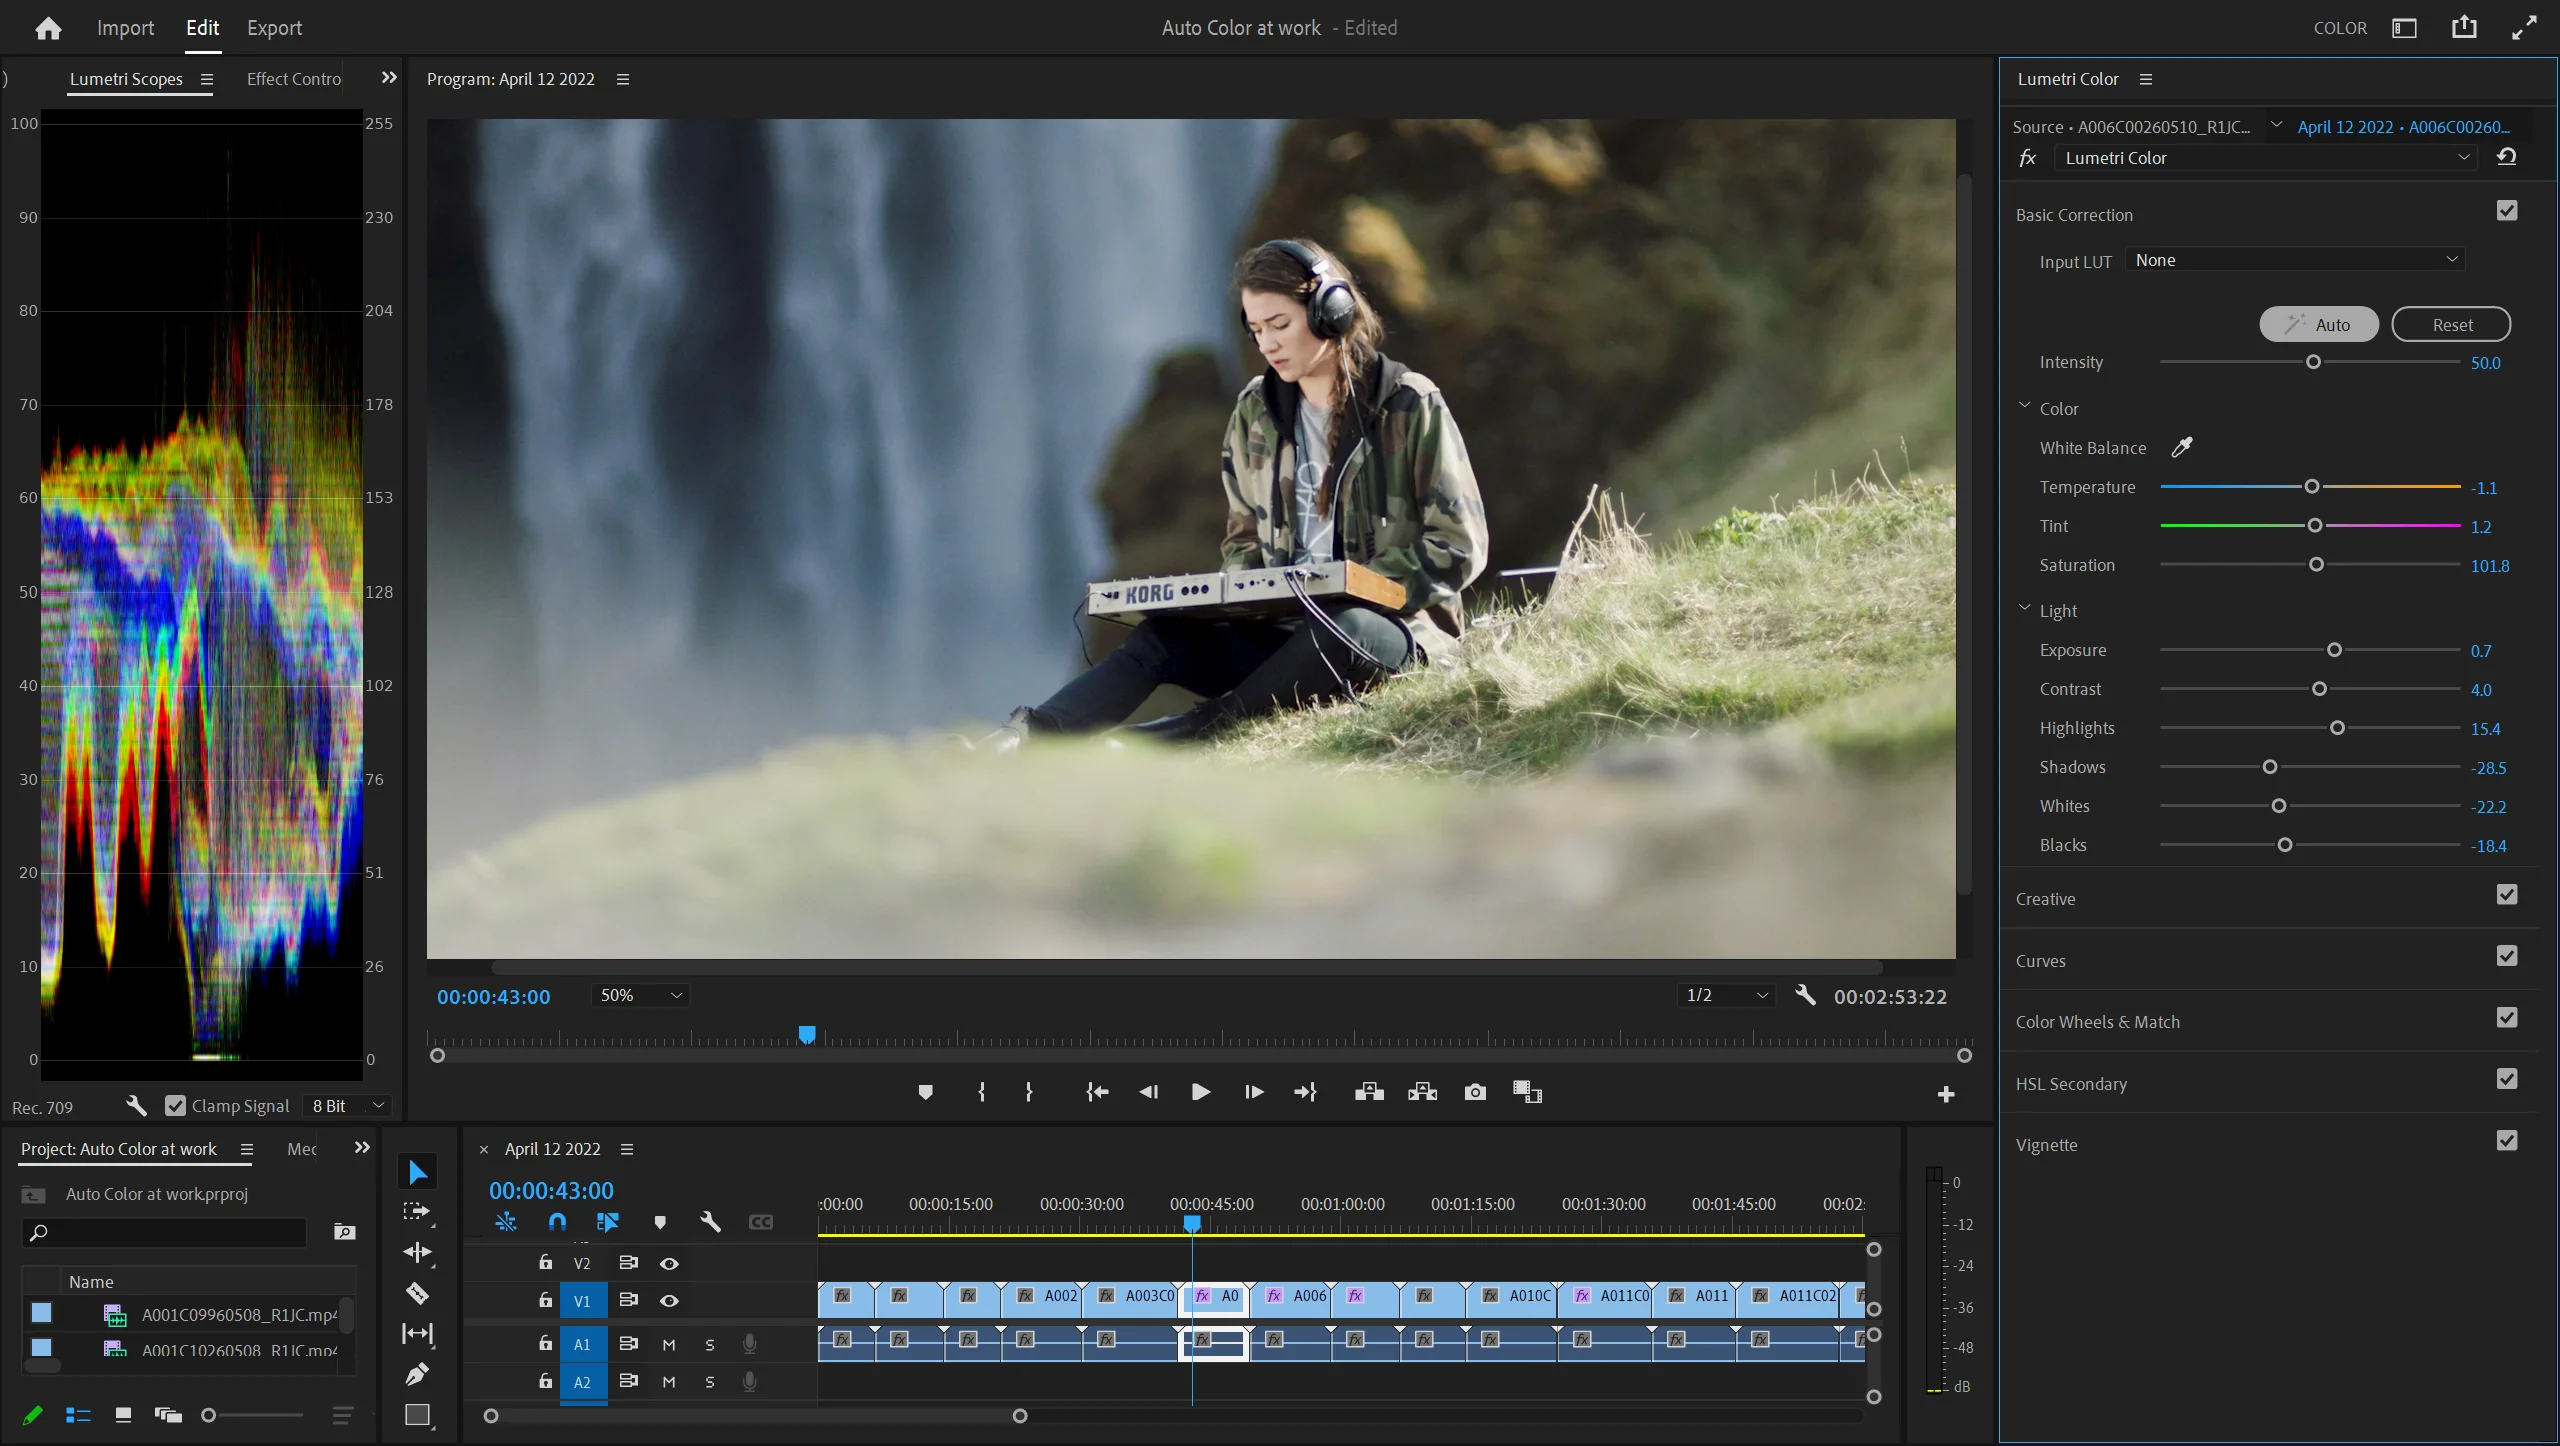 Adobe-Screenshots zeigen die KI-gestützte Auto-Color-Funktion in Premiere Pro für Mac